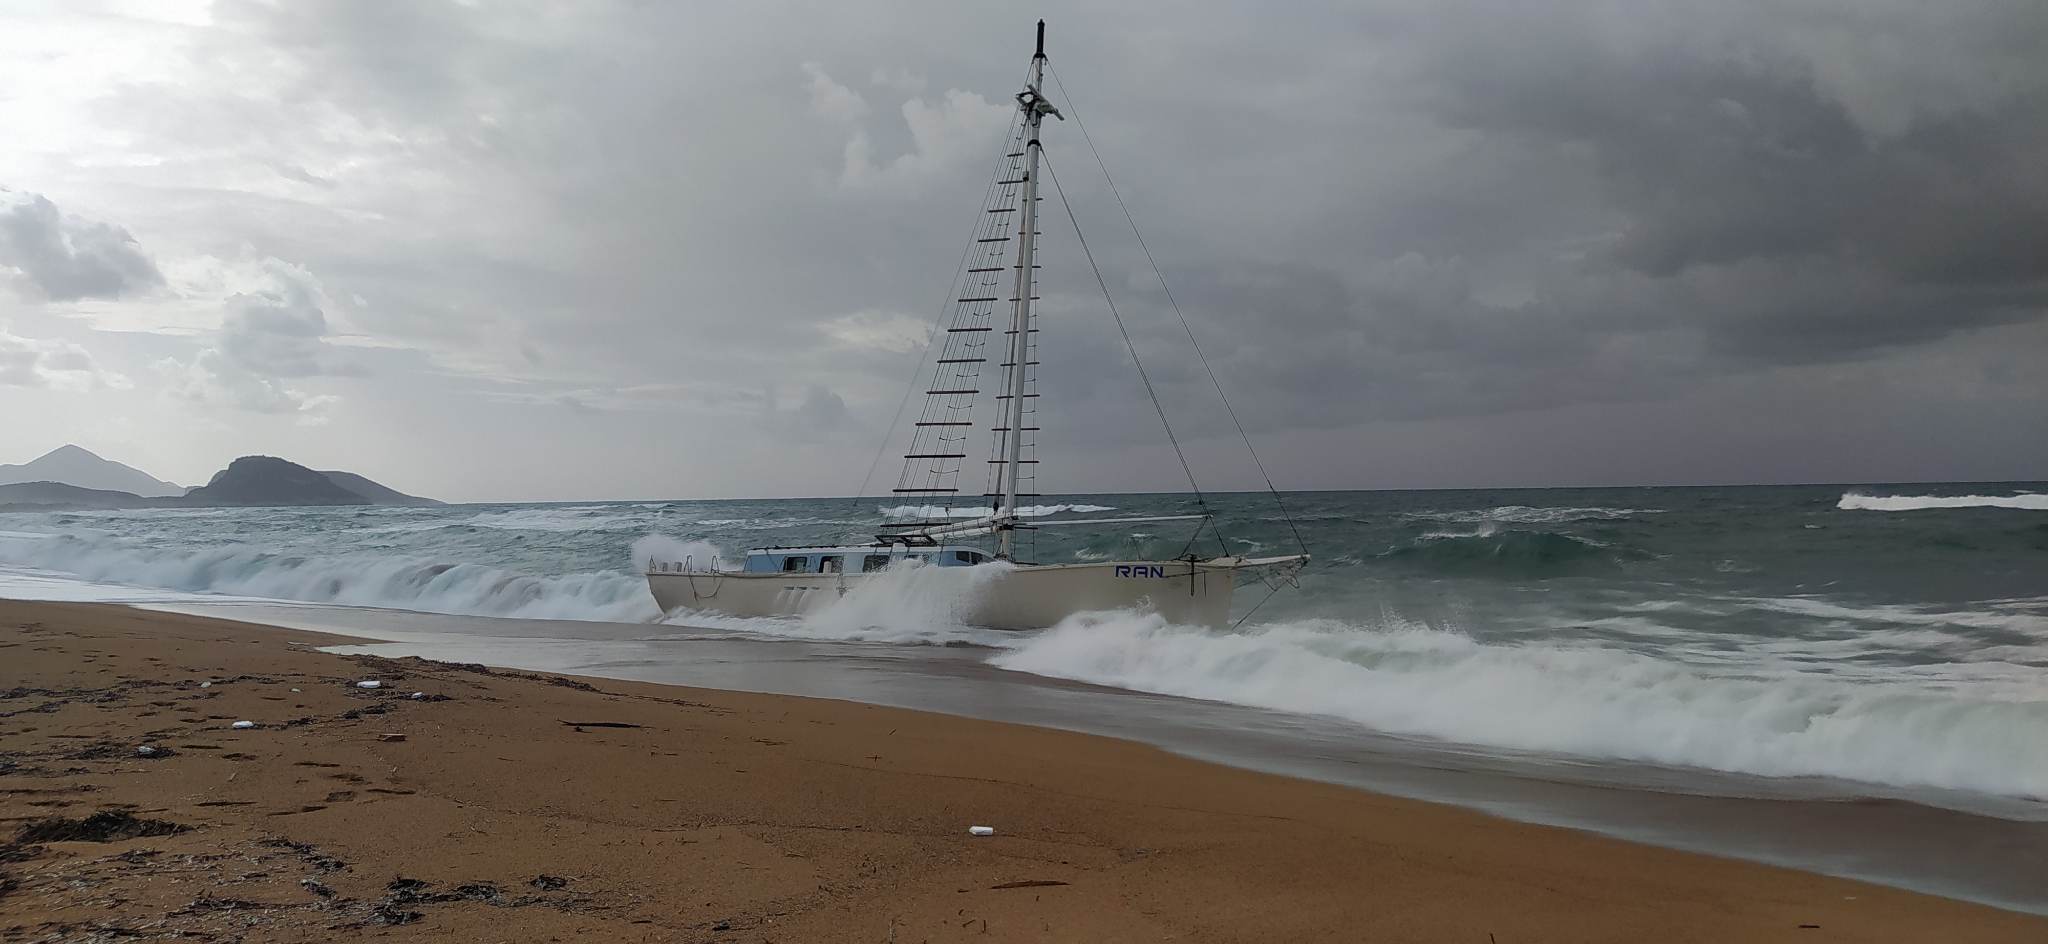 Μεσσηνία: Ακυβέρνητο ιστιοφόρο εντοπίστηκε στην παραλία Χρυσή Ακτή, στο Μάτι Γαργαλιάνων